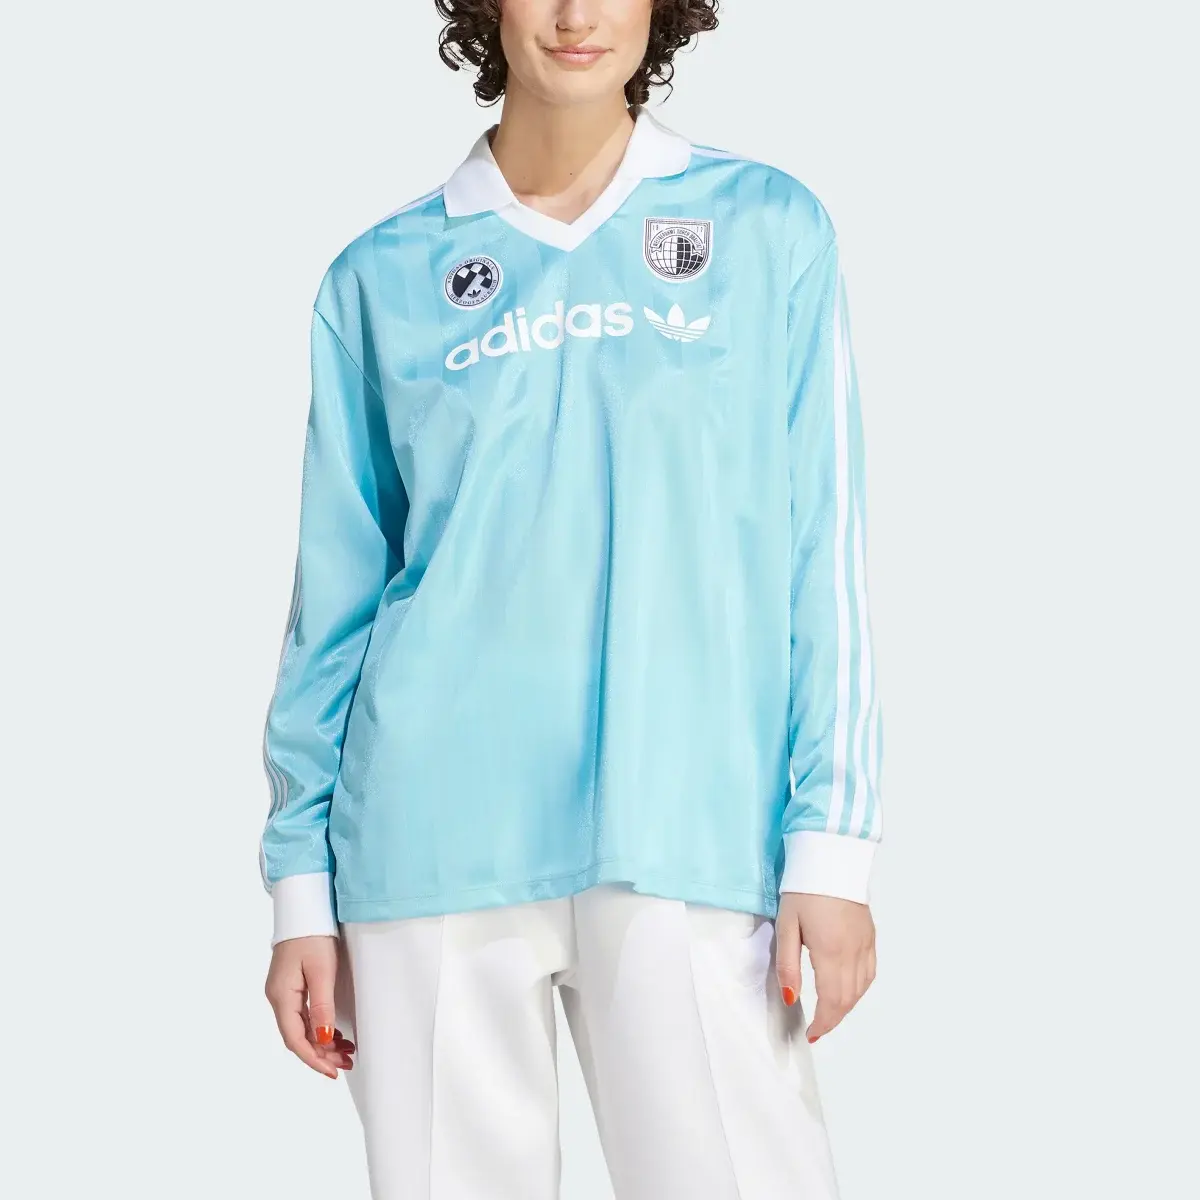 Adidas Koszulka Football Long Sleeve. 1